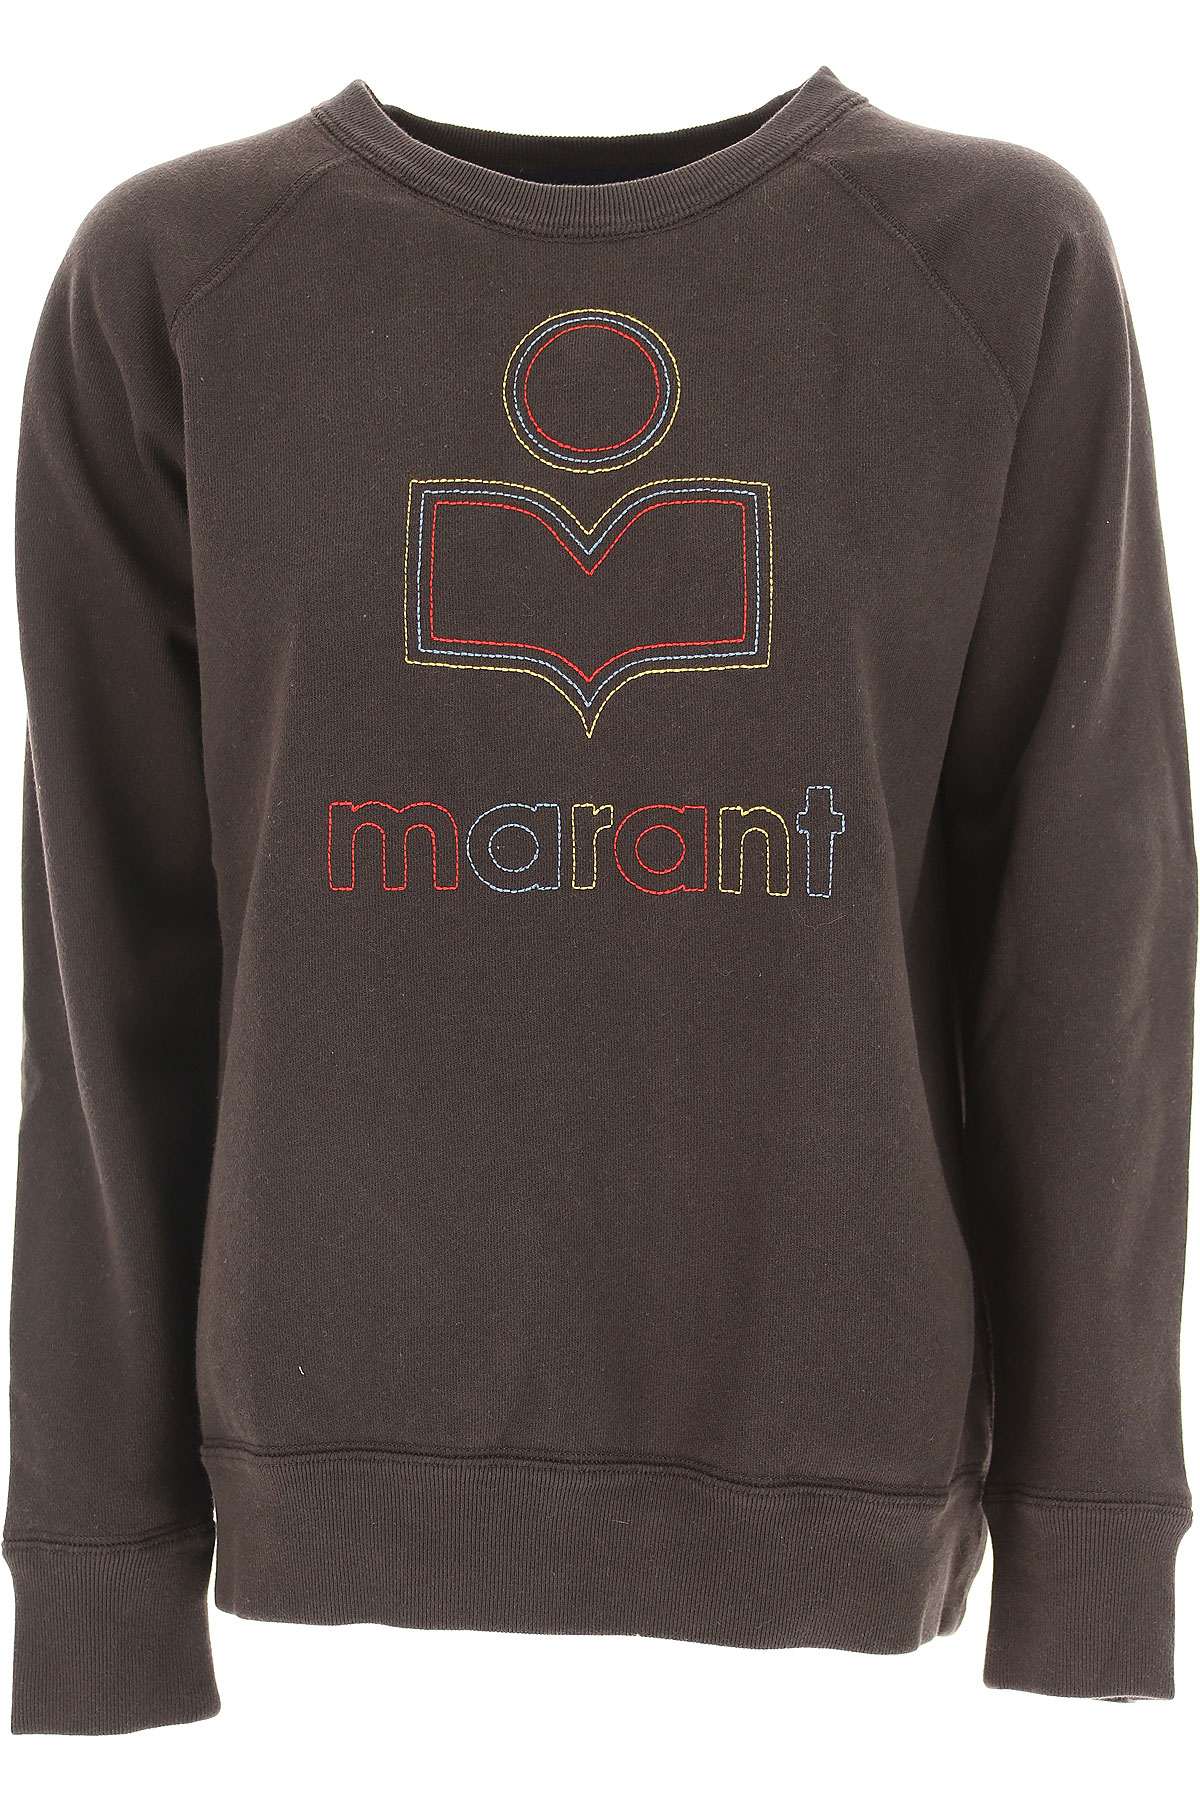 Isabel Marant Sweatshirt for Women, Noir délavé, Coton, 2017, 40 42